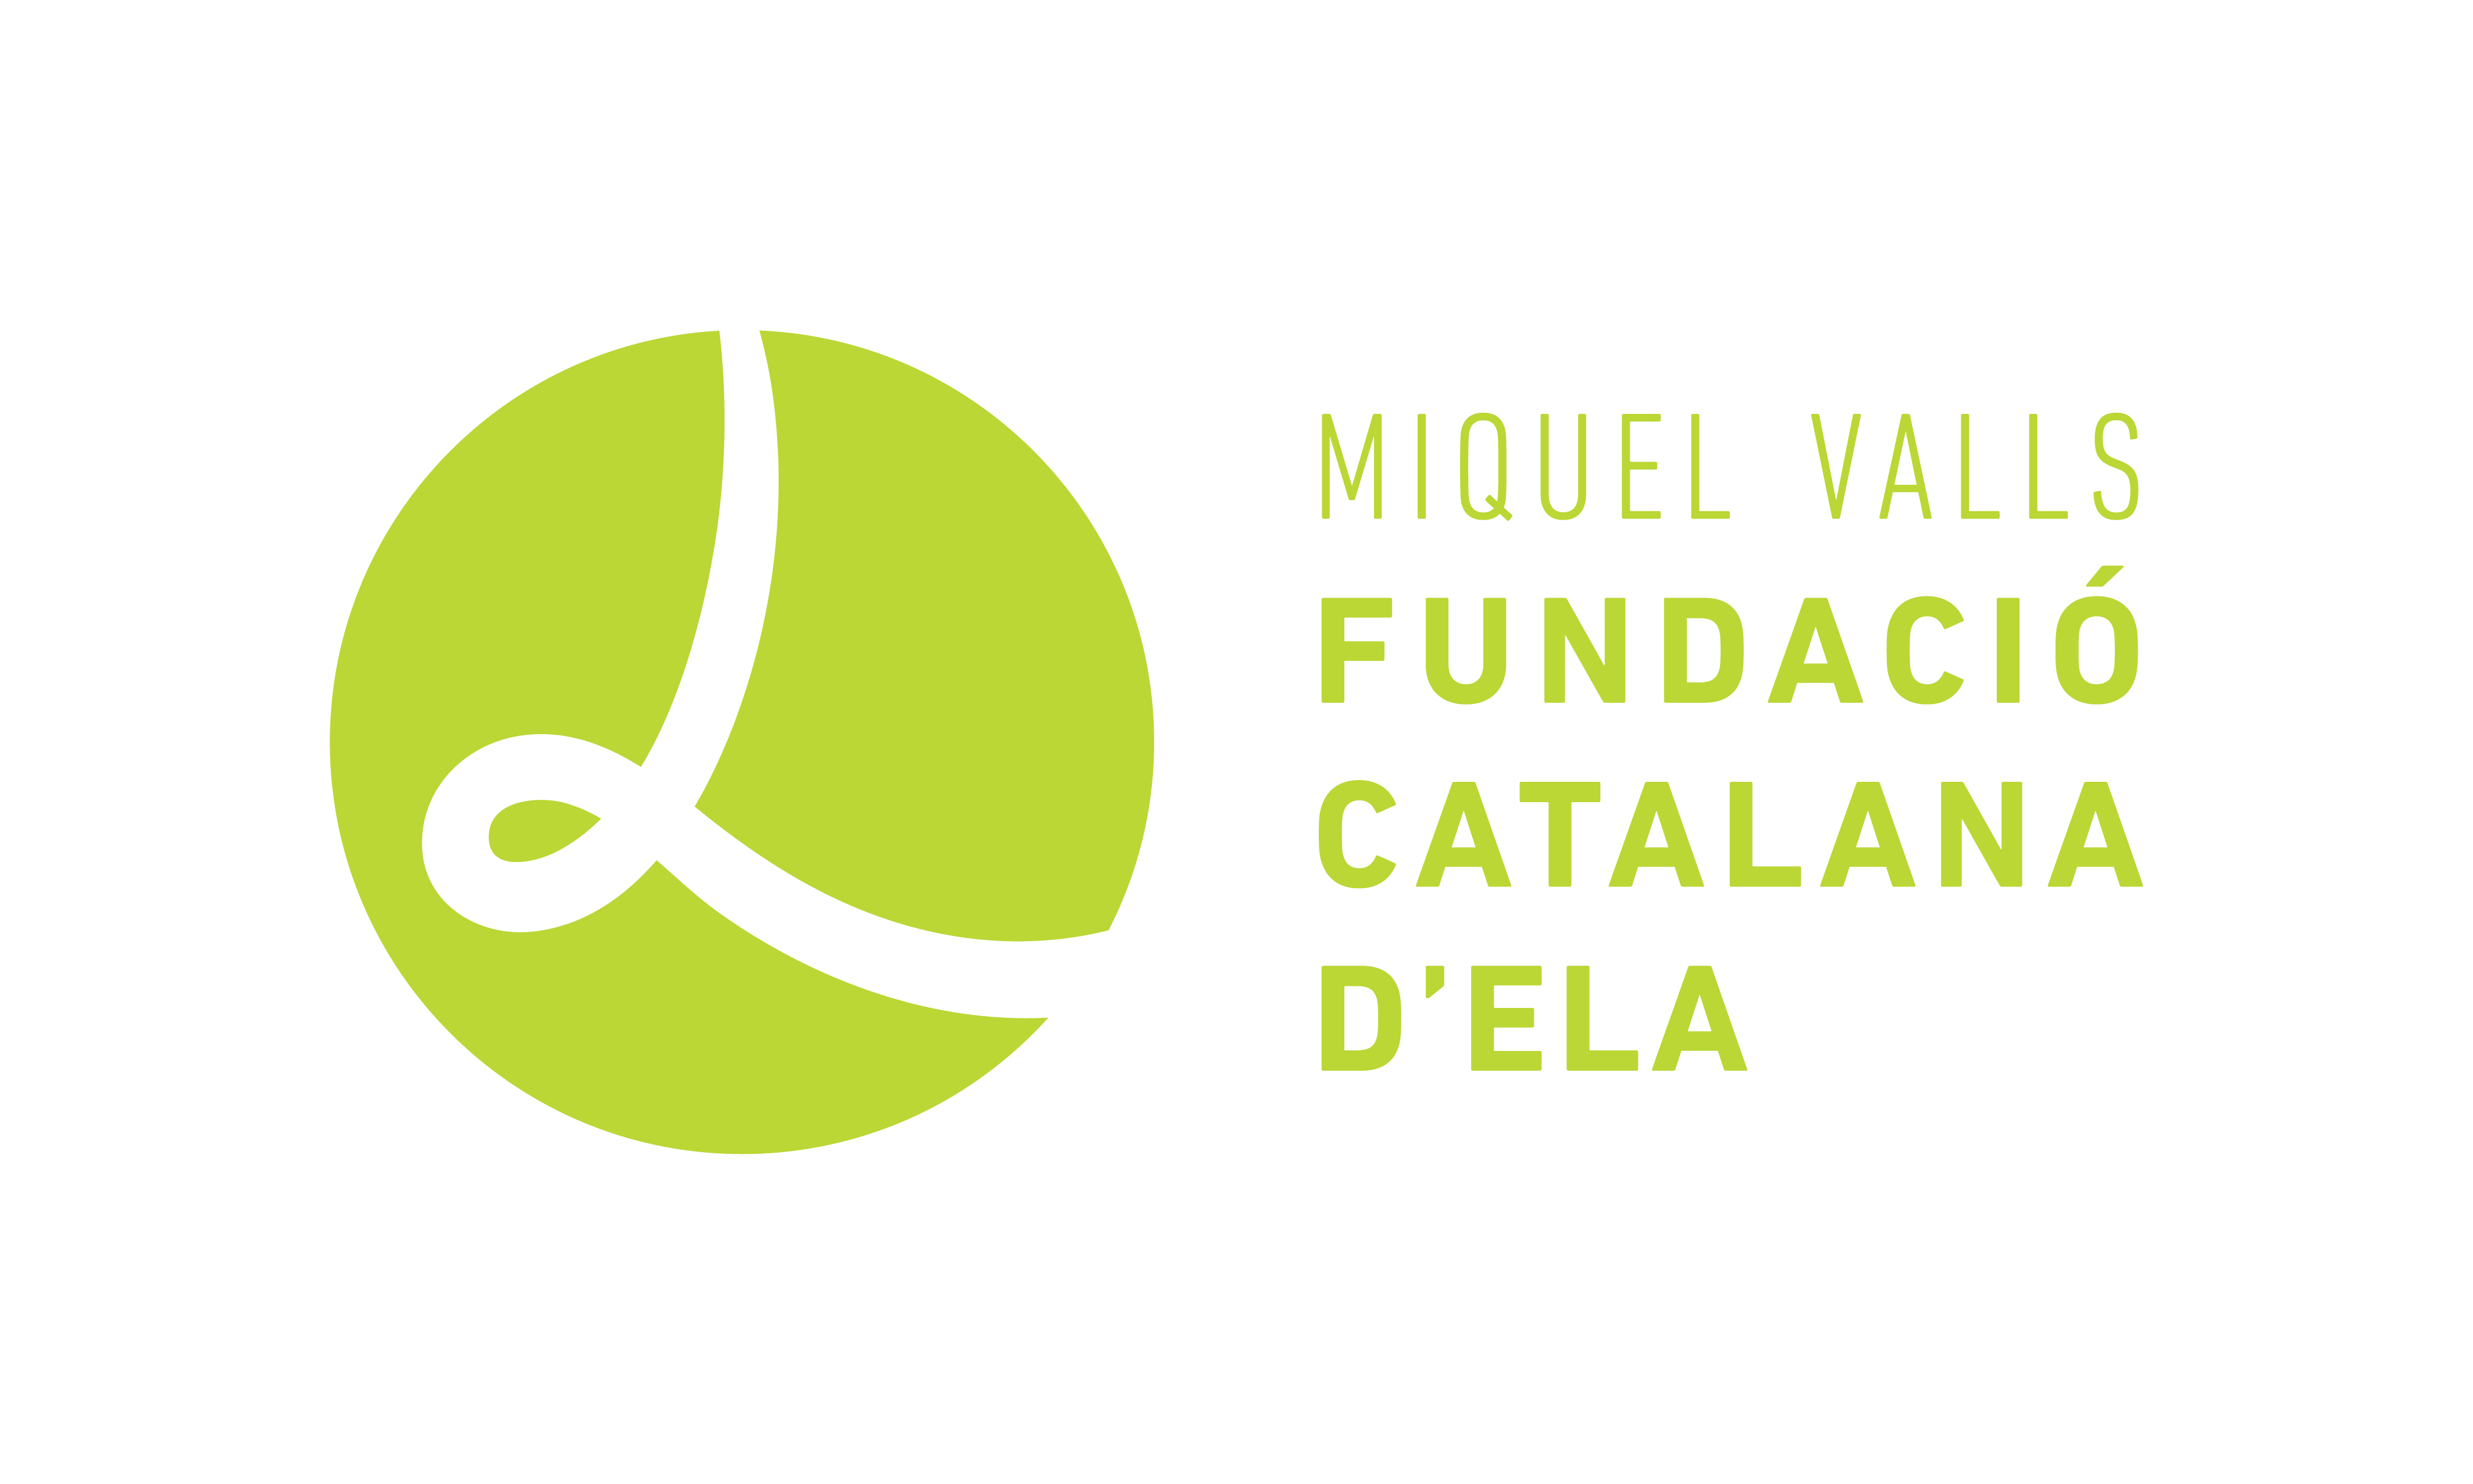 Fundació Catalana d'ELA Miquel Valls